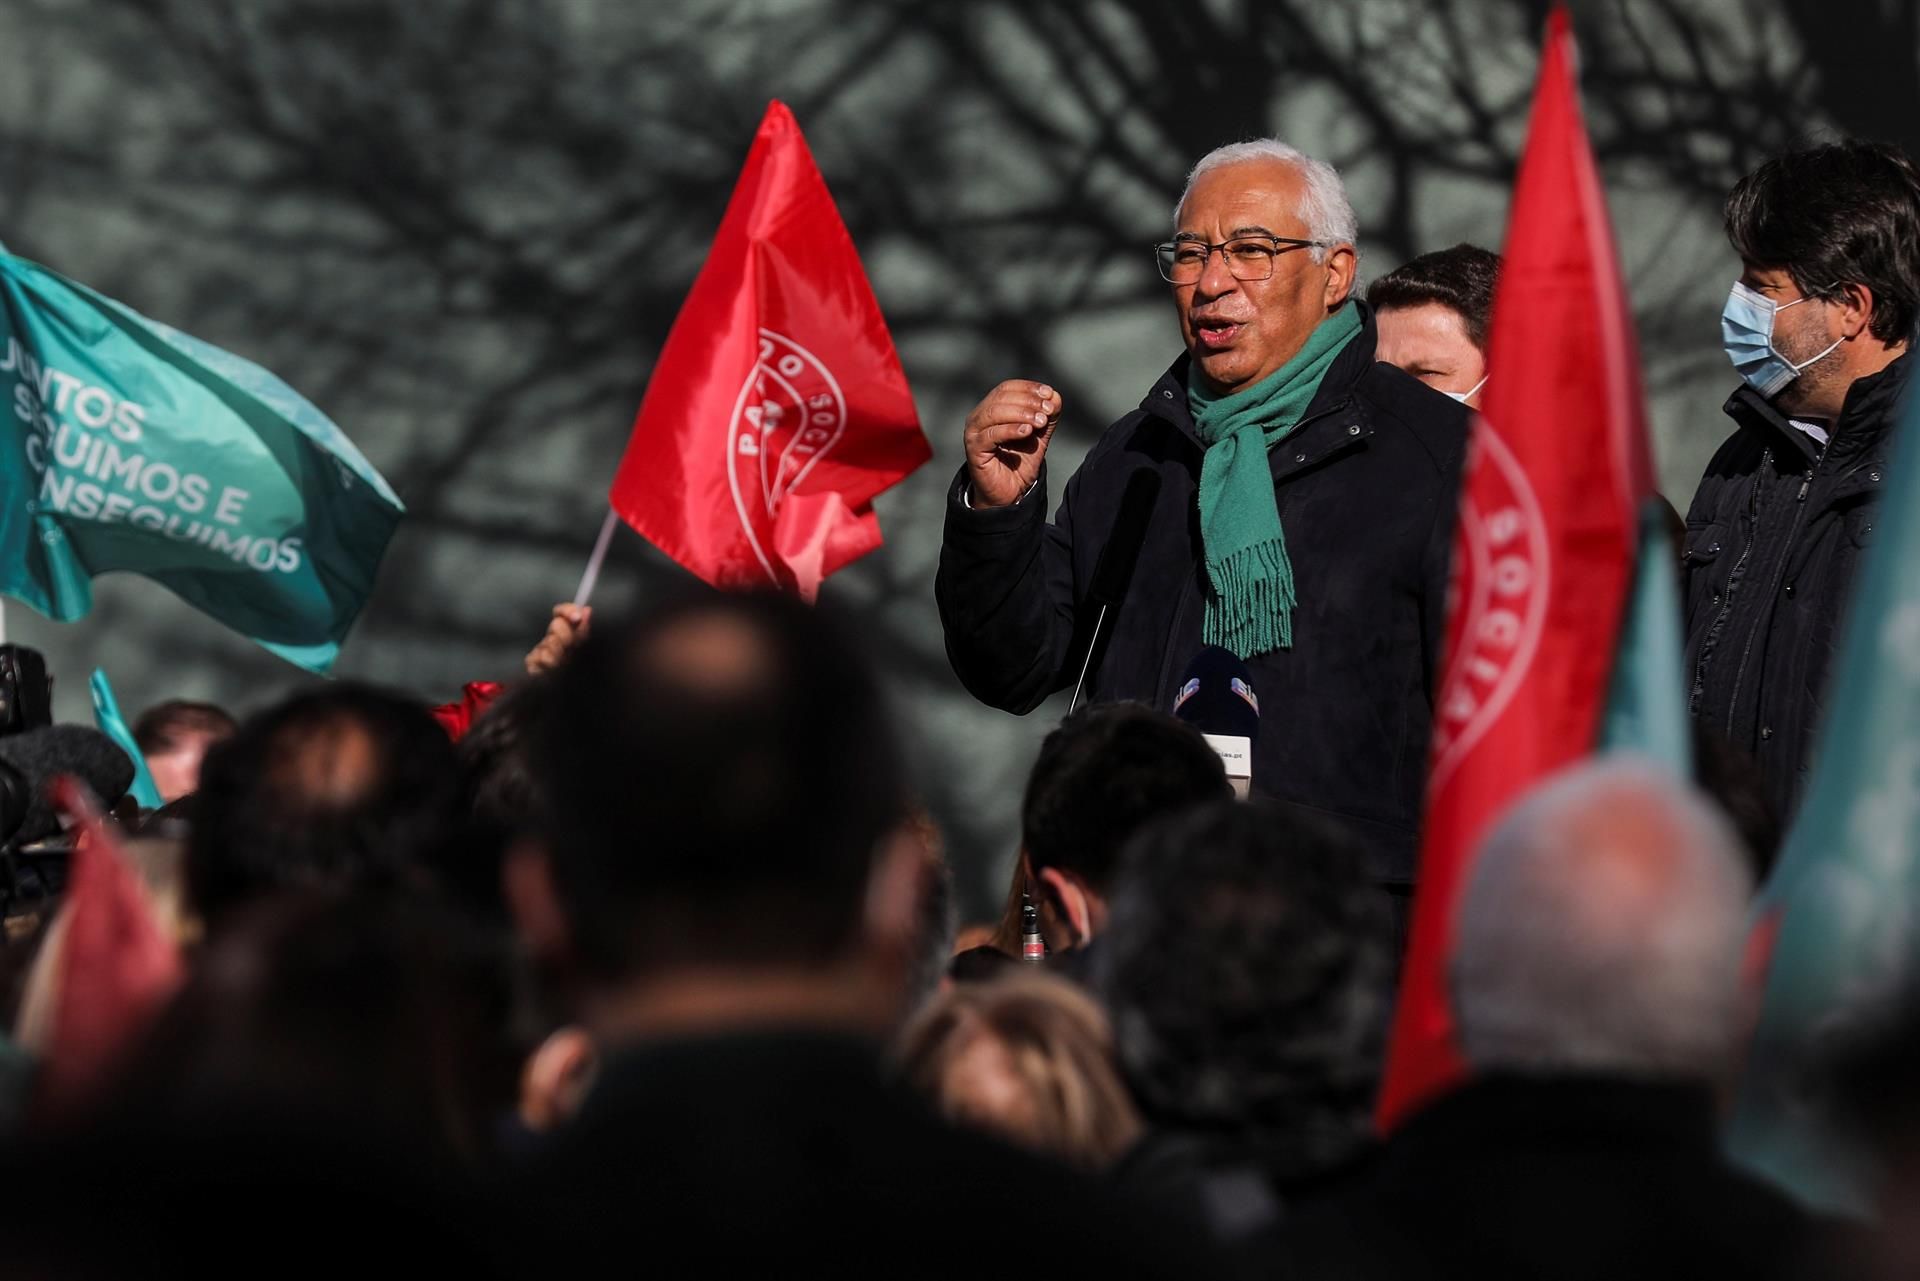 La campaña electoral concluye en Portugal con empate técnico entre socialistas y centroderecha